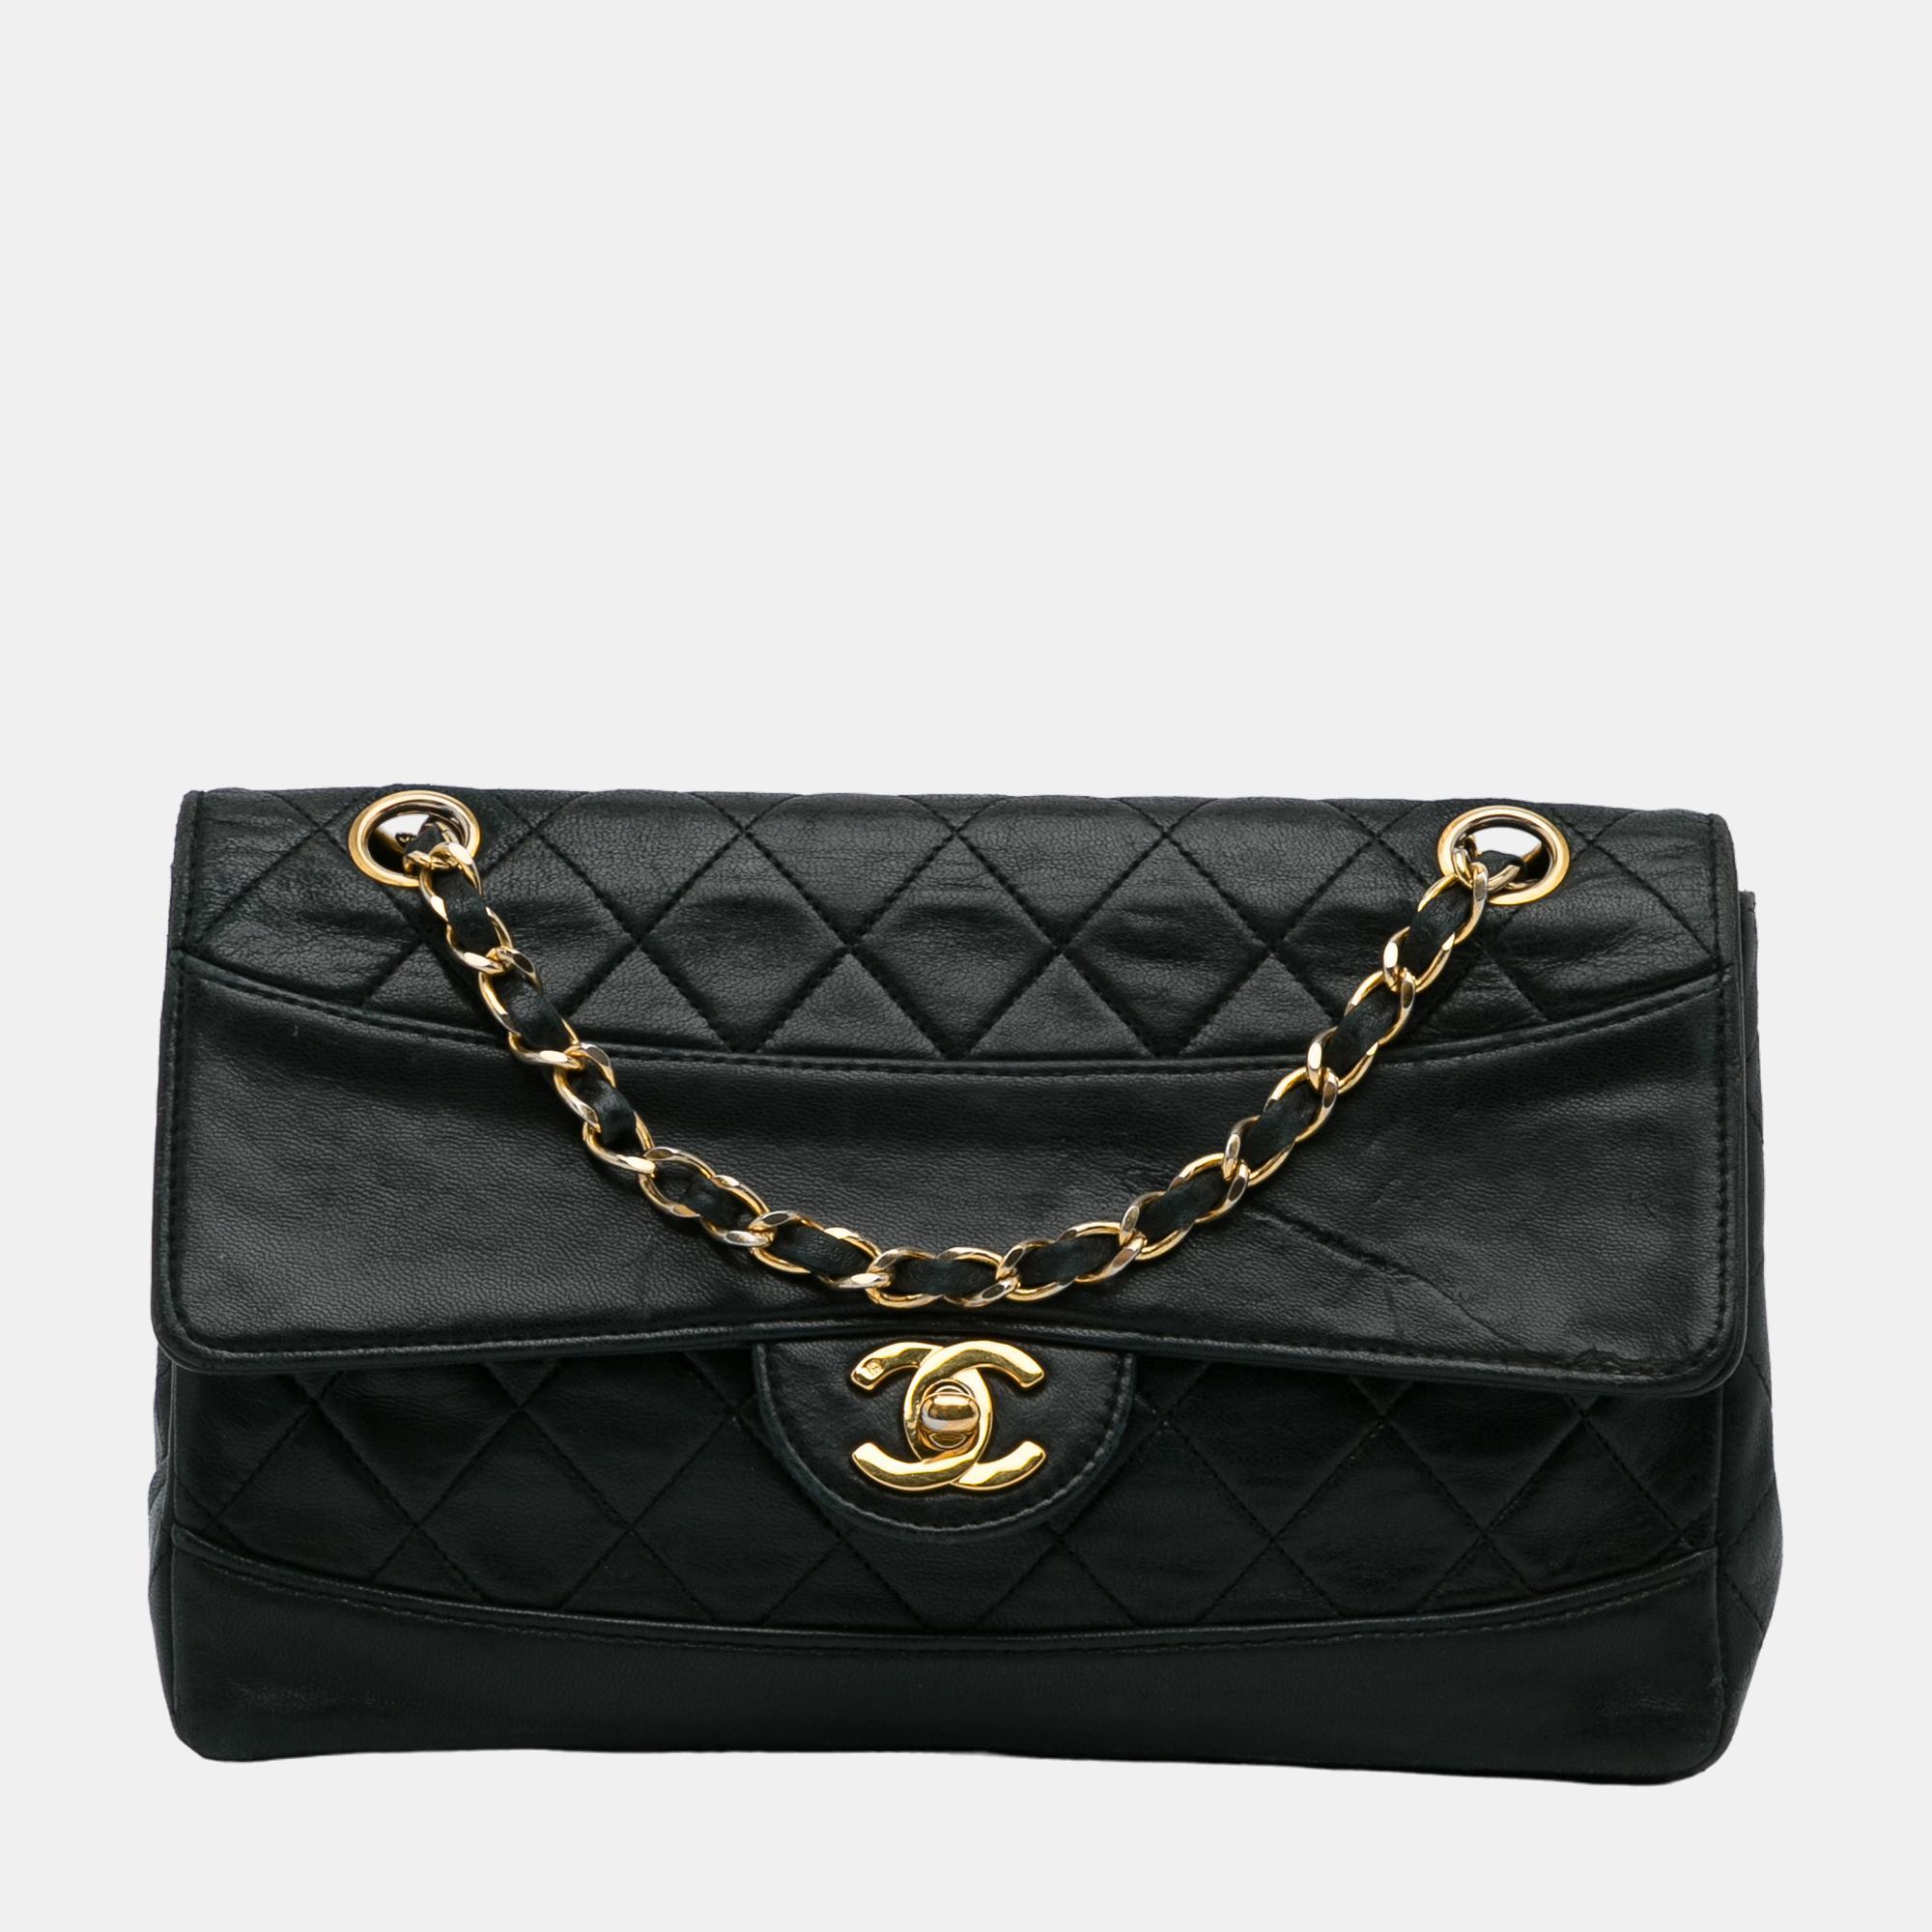 Chanel black quilted lambskin shoulder bag